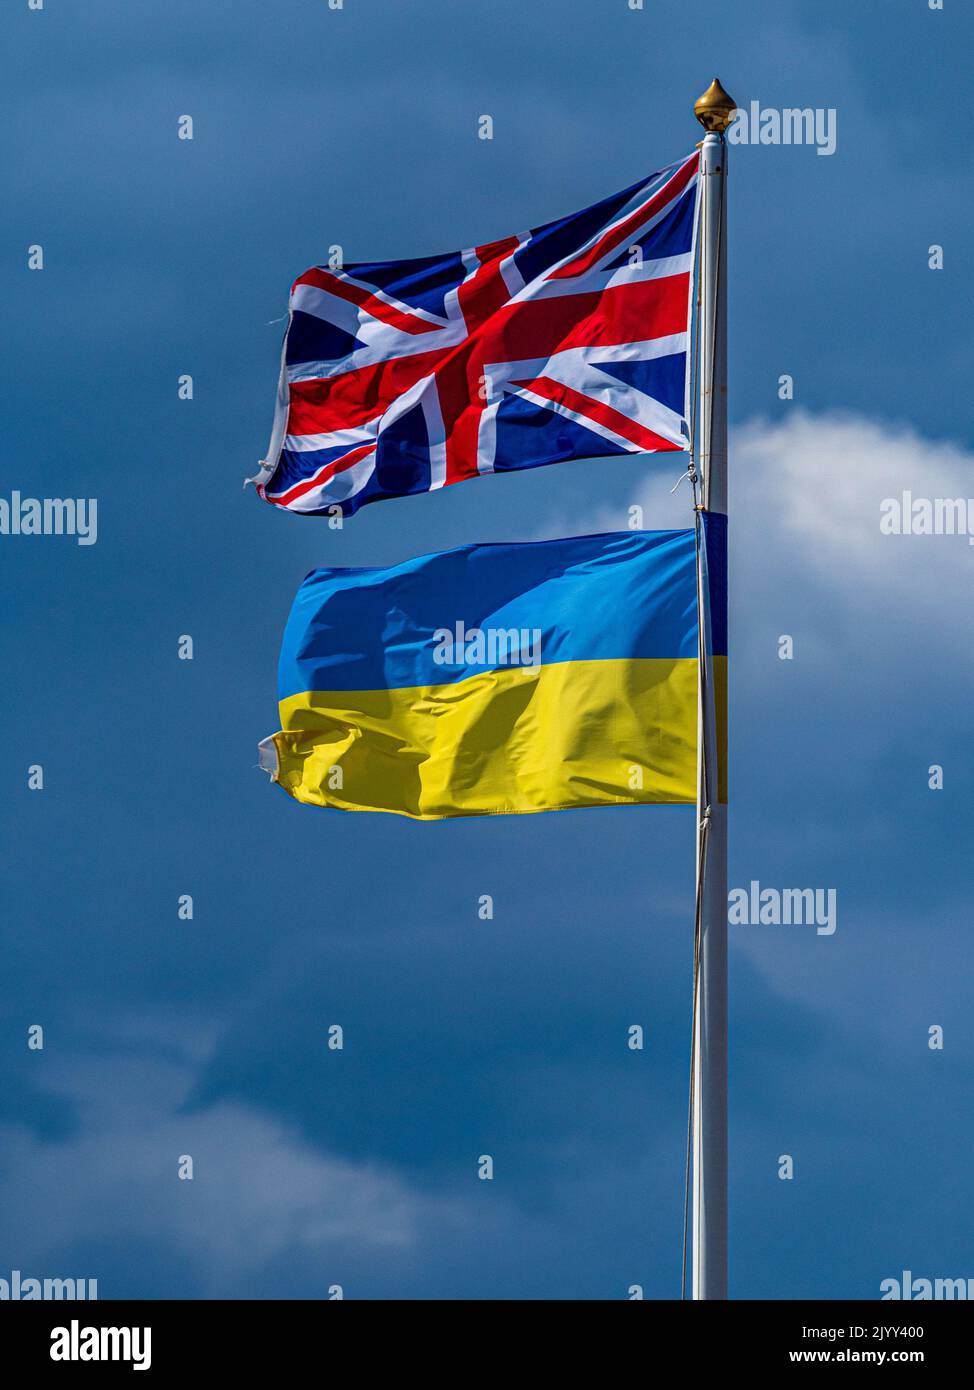 Britische und ukrainische Flaggen fliegen zusammen, um Solidarität zu zeigen. Britische und ukrainische Flaggen. Britische und ukrainische Flagge. Stockfoto